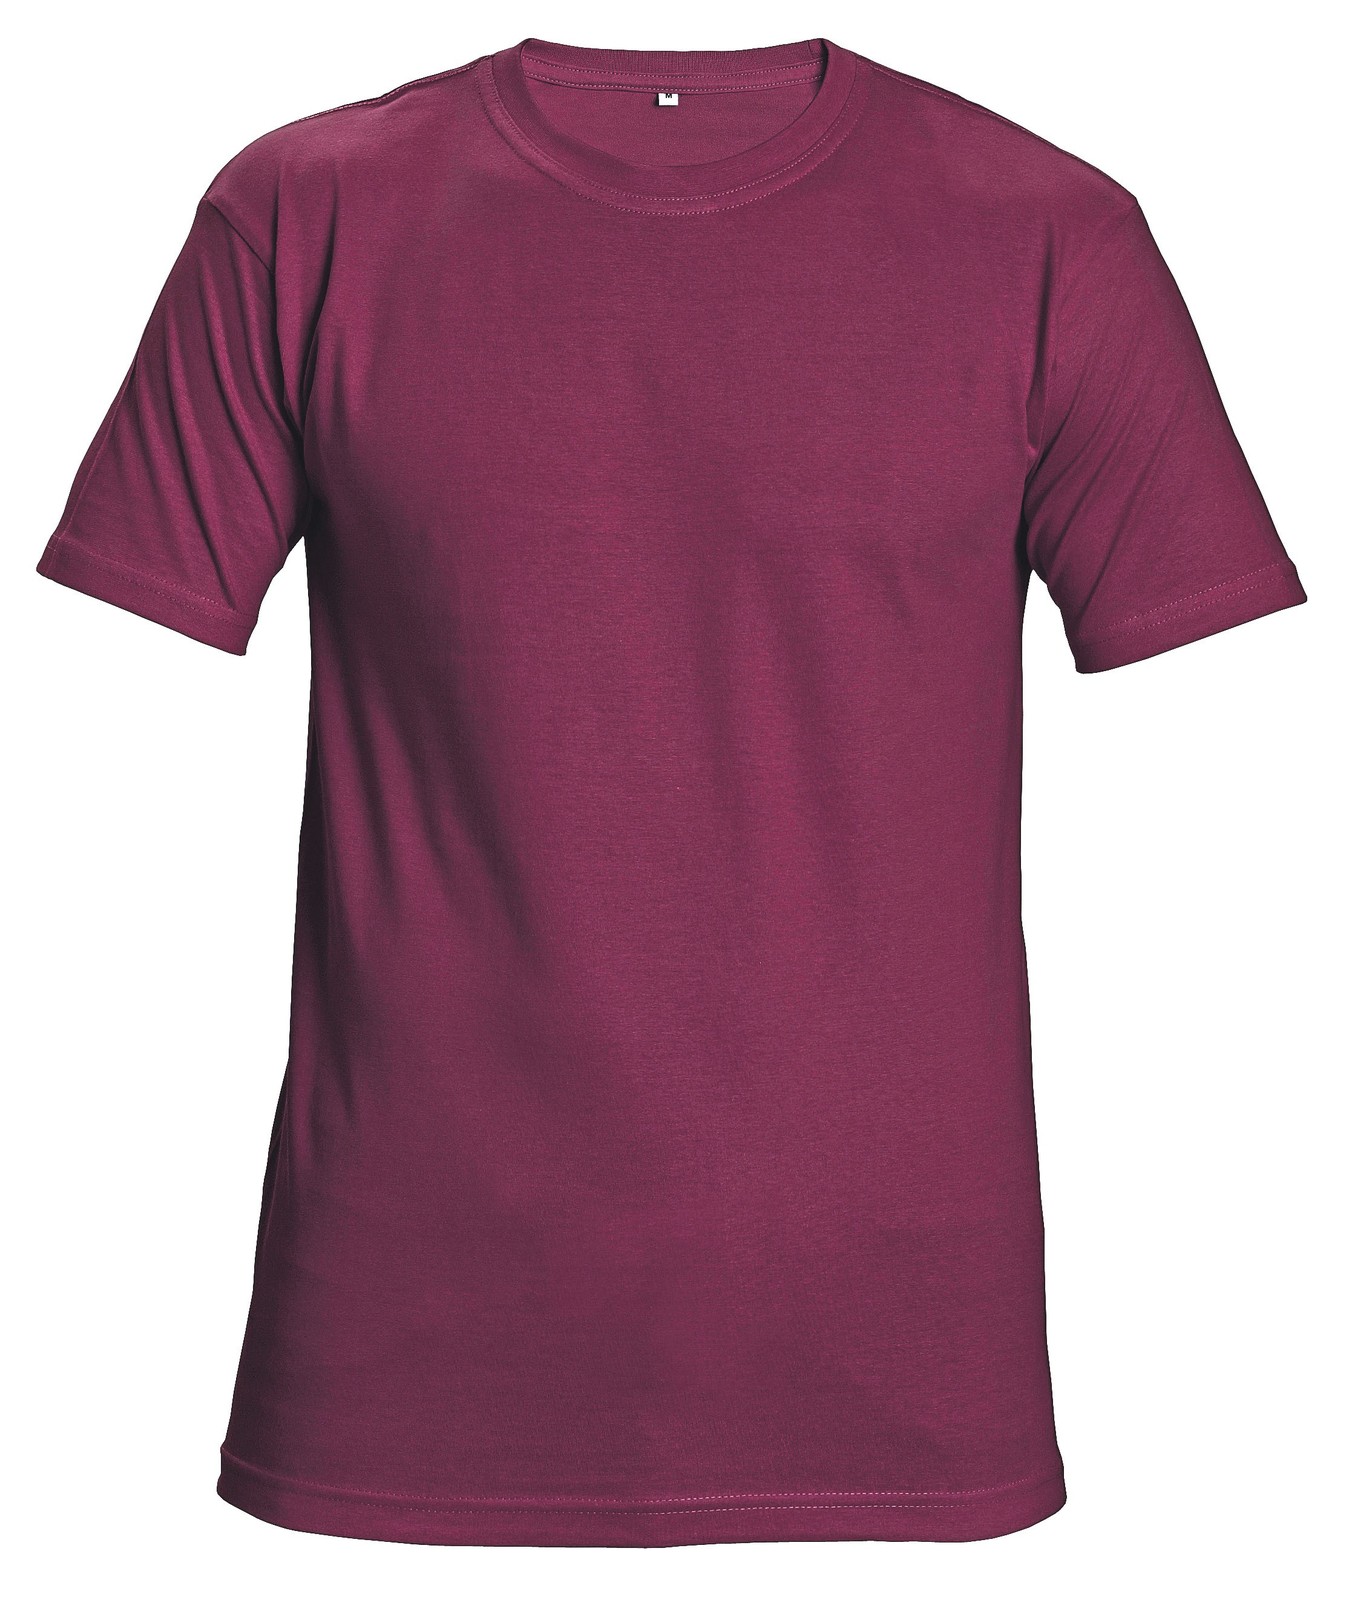 Tričko s krátkym rukávom Teesta unisex - veľkosť: S, farba: bordová